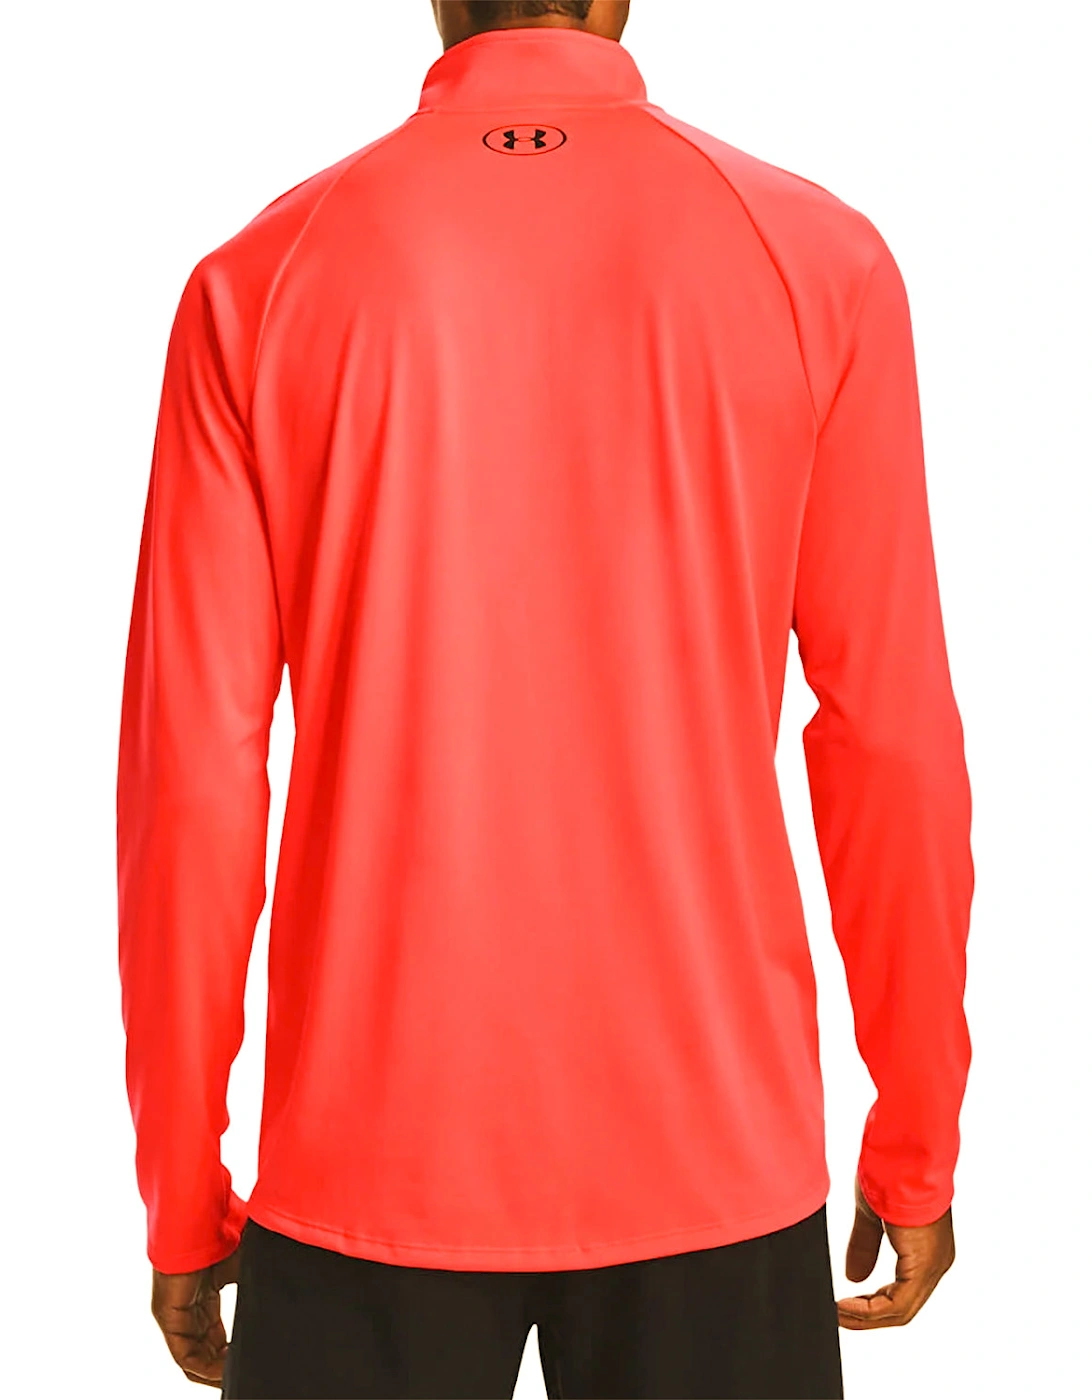 Mens 2.0 1/2 Zip Sweatshirt (Orange)